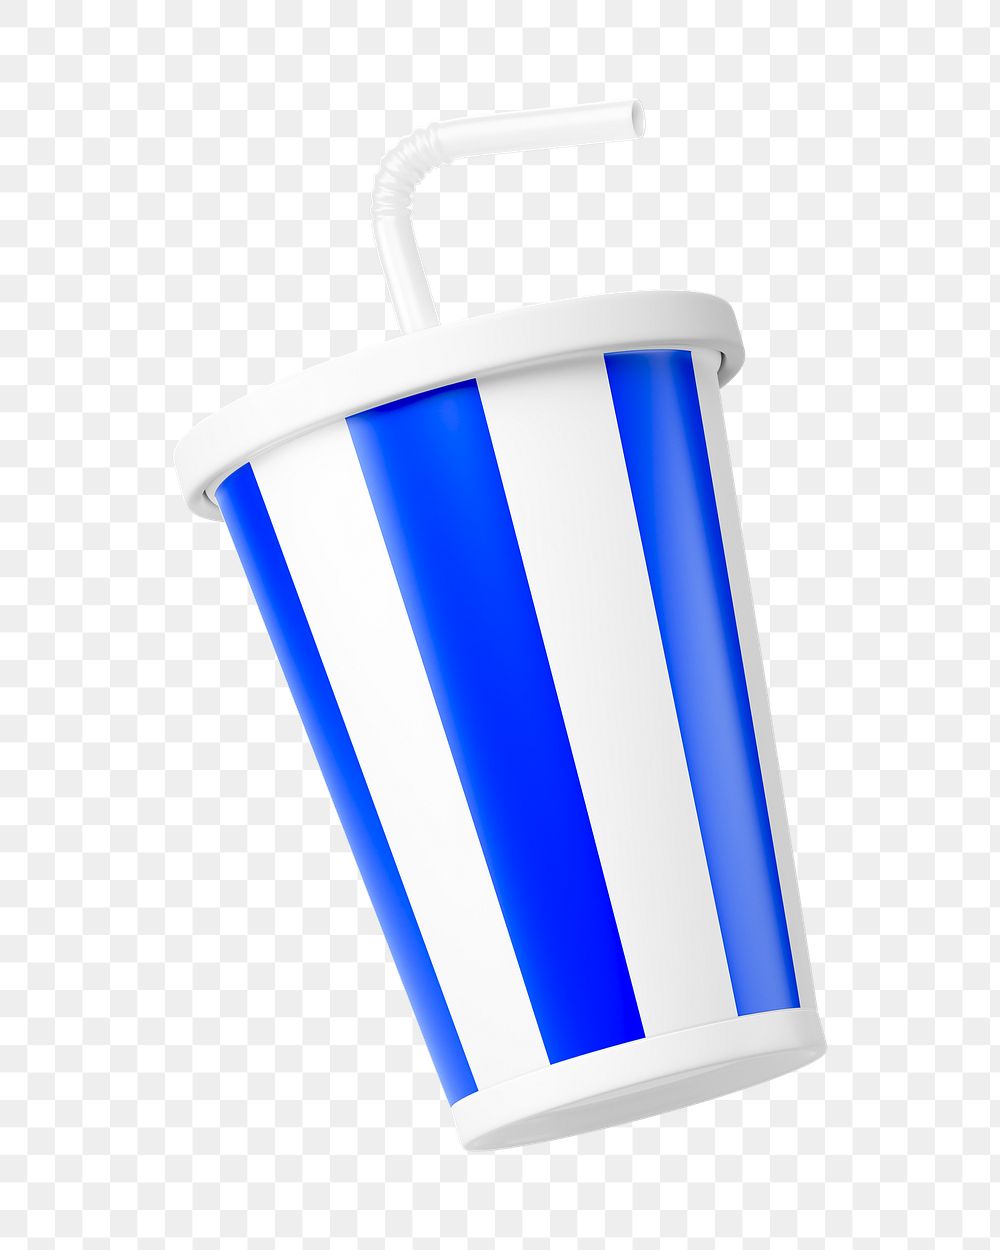 PNG 3D soda cup, element illustration, transparent background